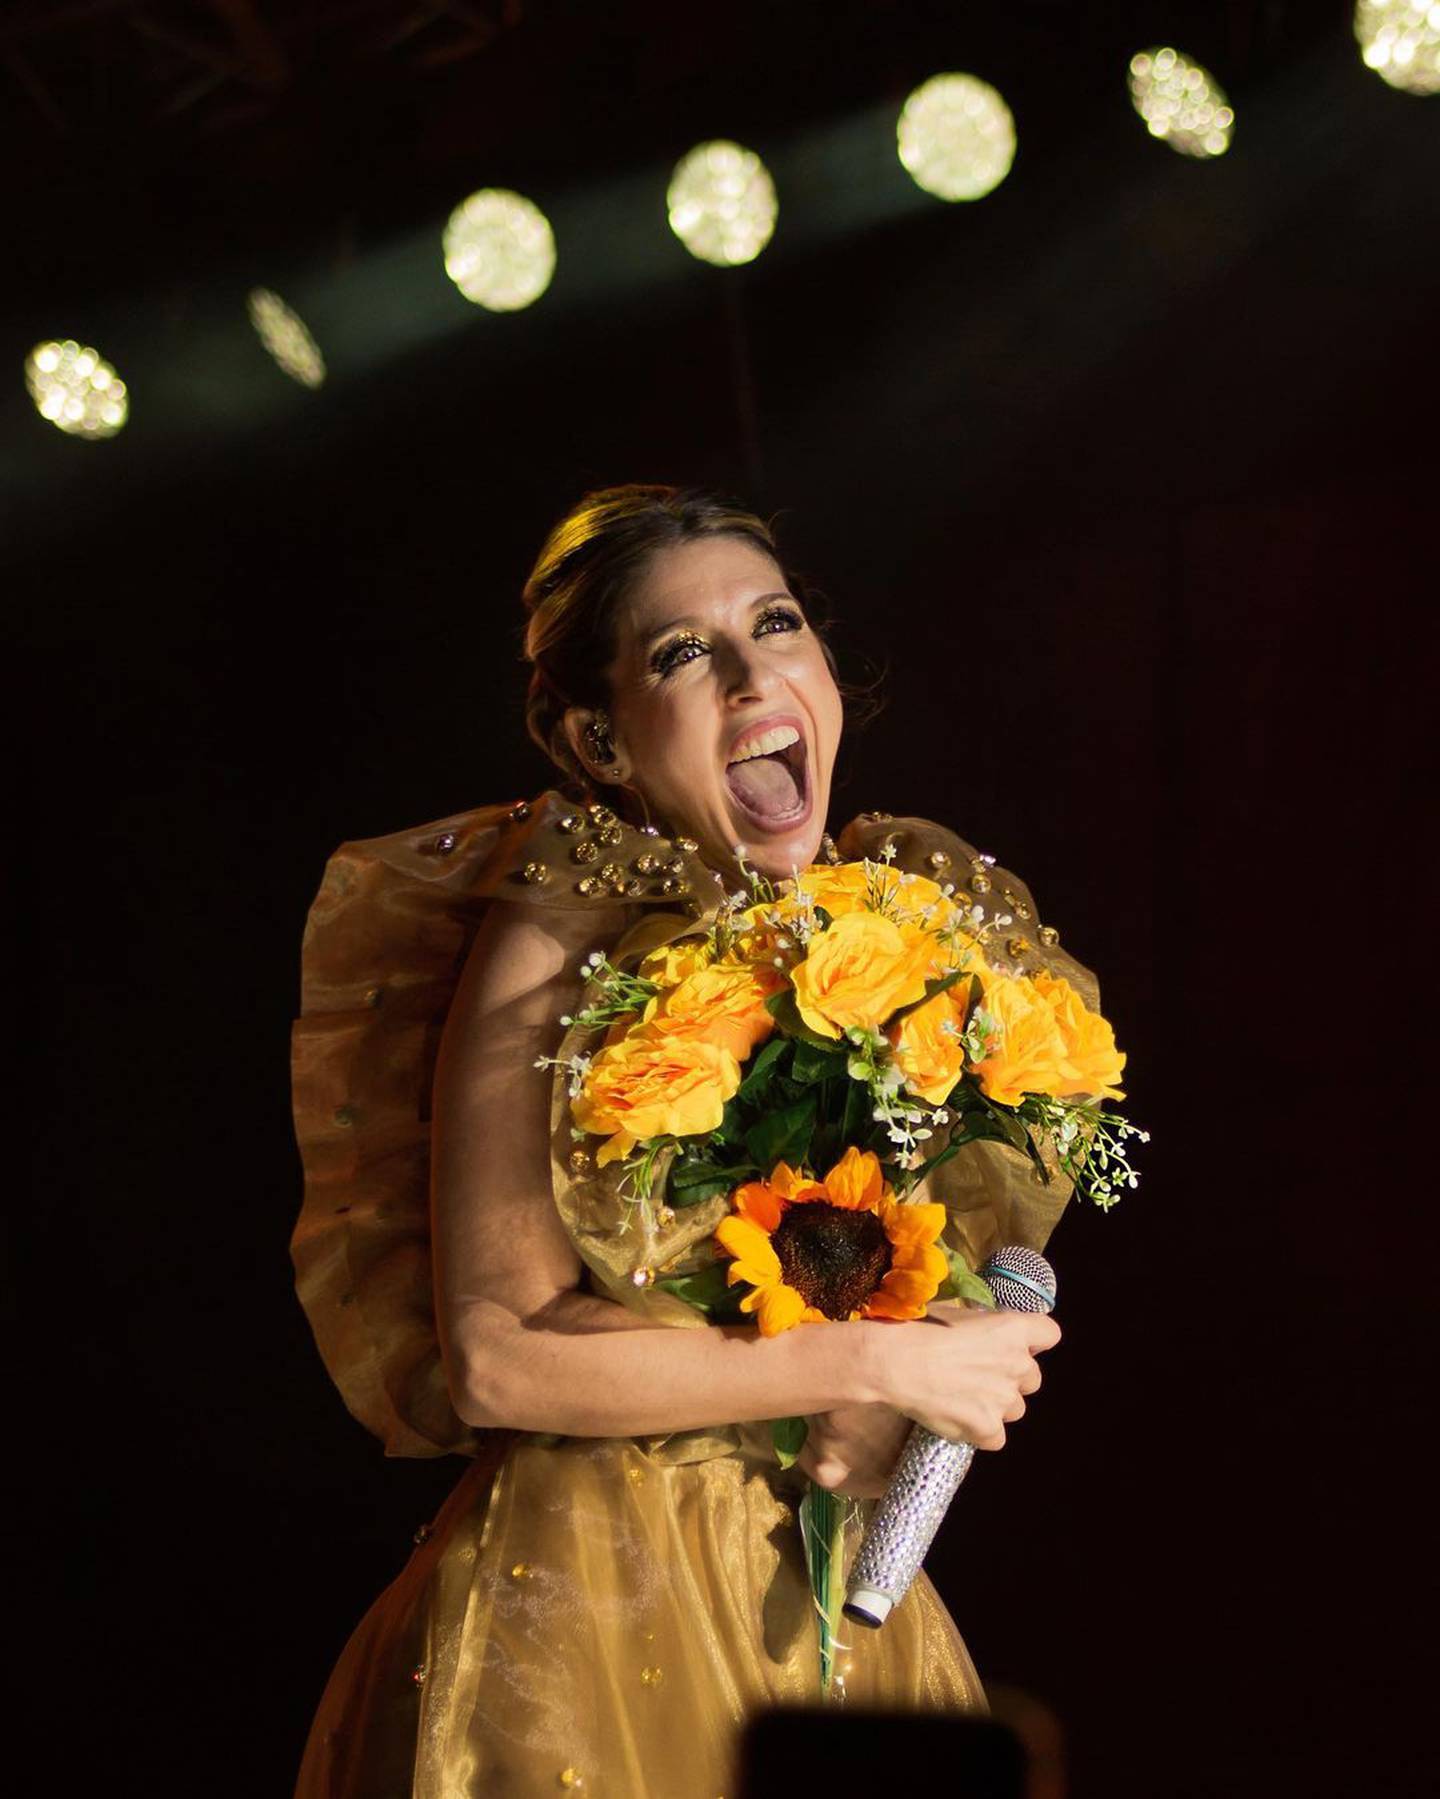 La actriz Flor Bertotti dará un espectáculo en Parque Viva el 7 de setiembre, para cantar su canción "Flores amarillas".